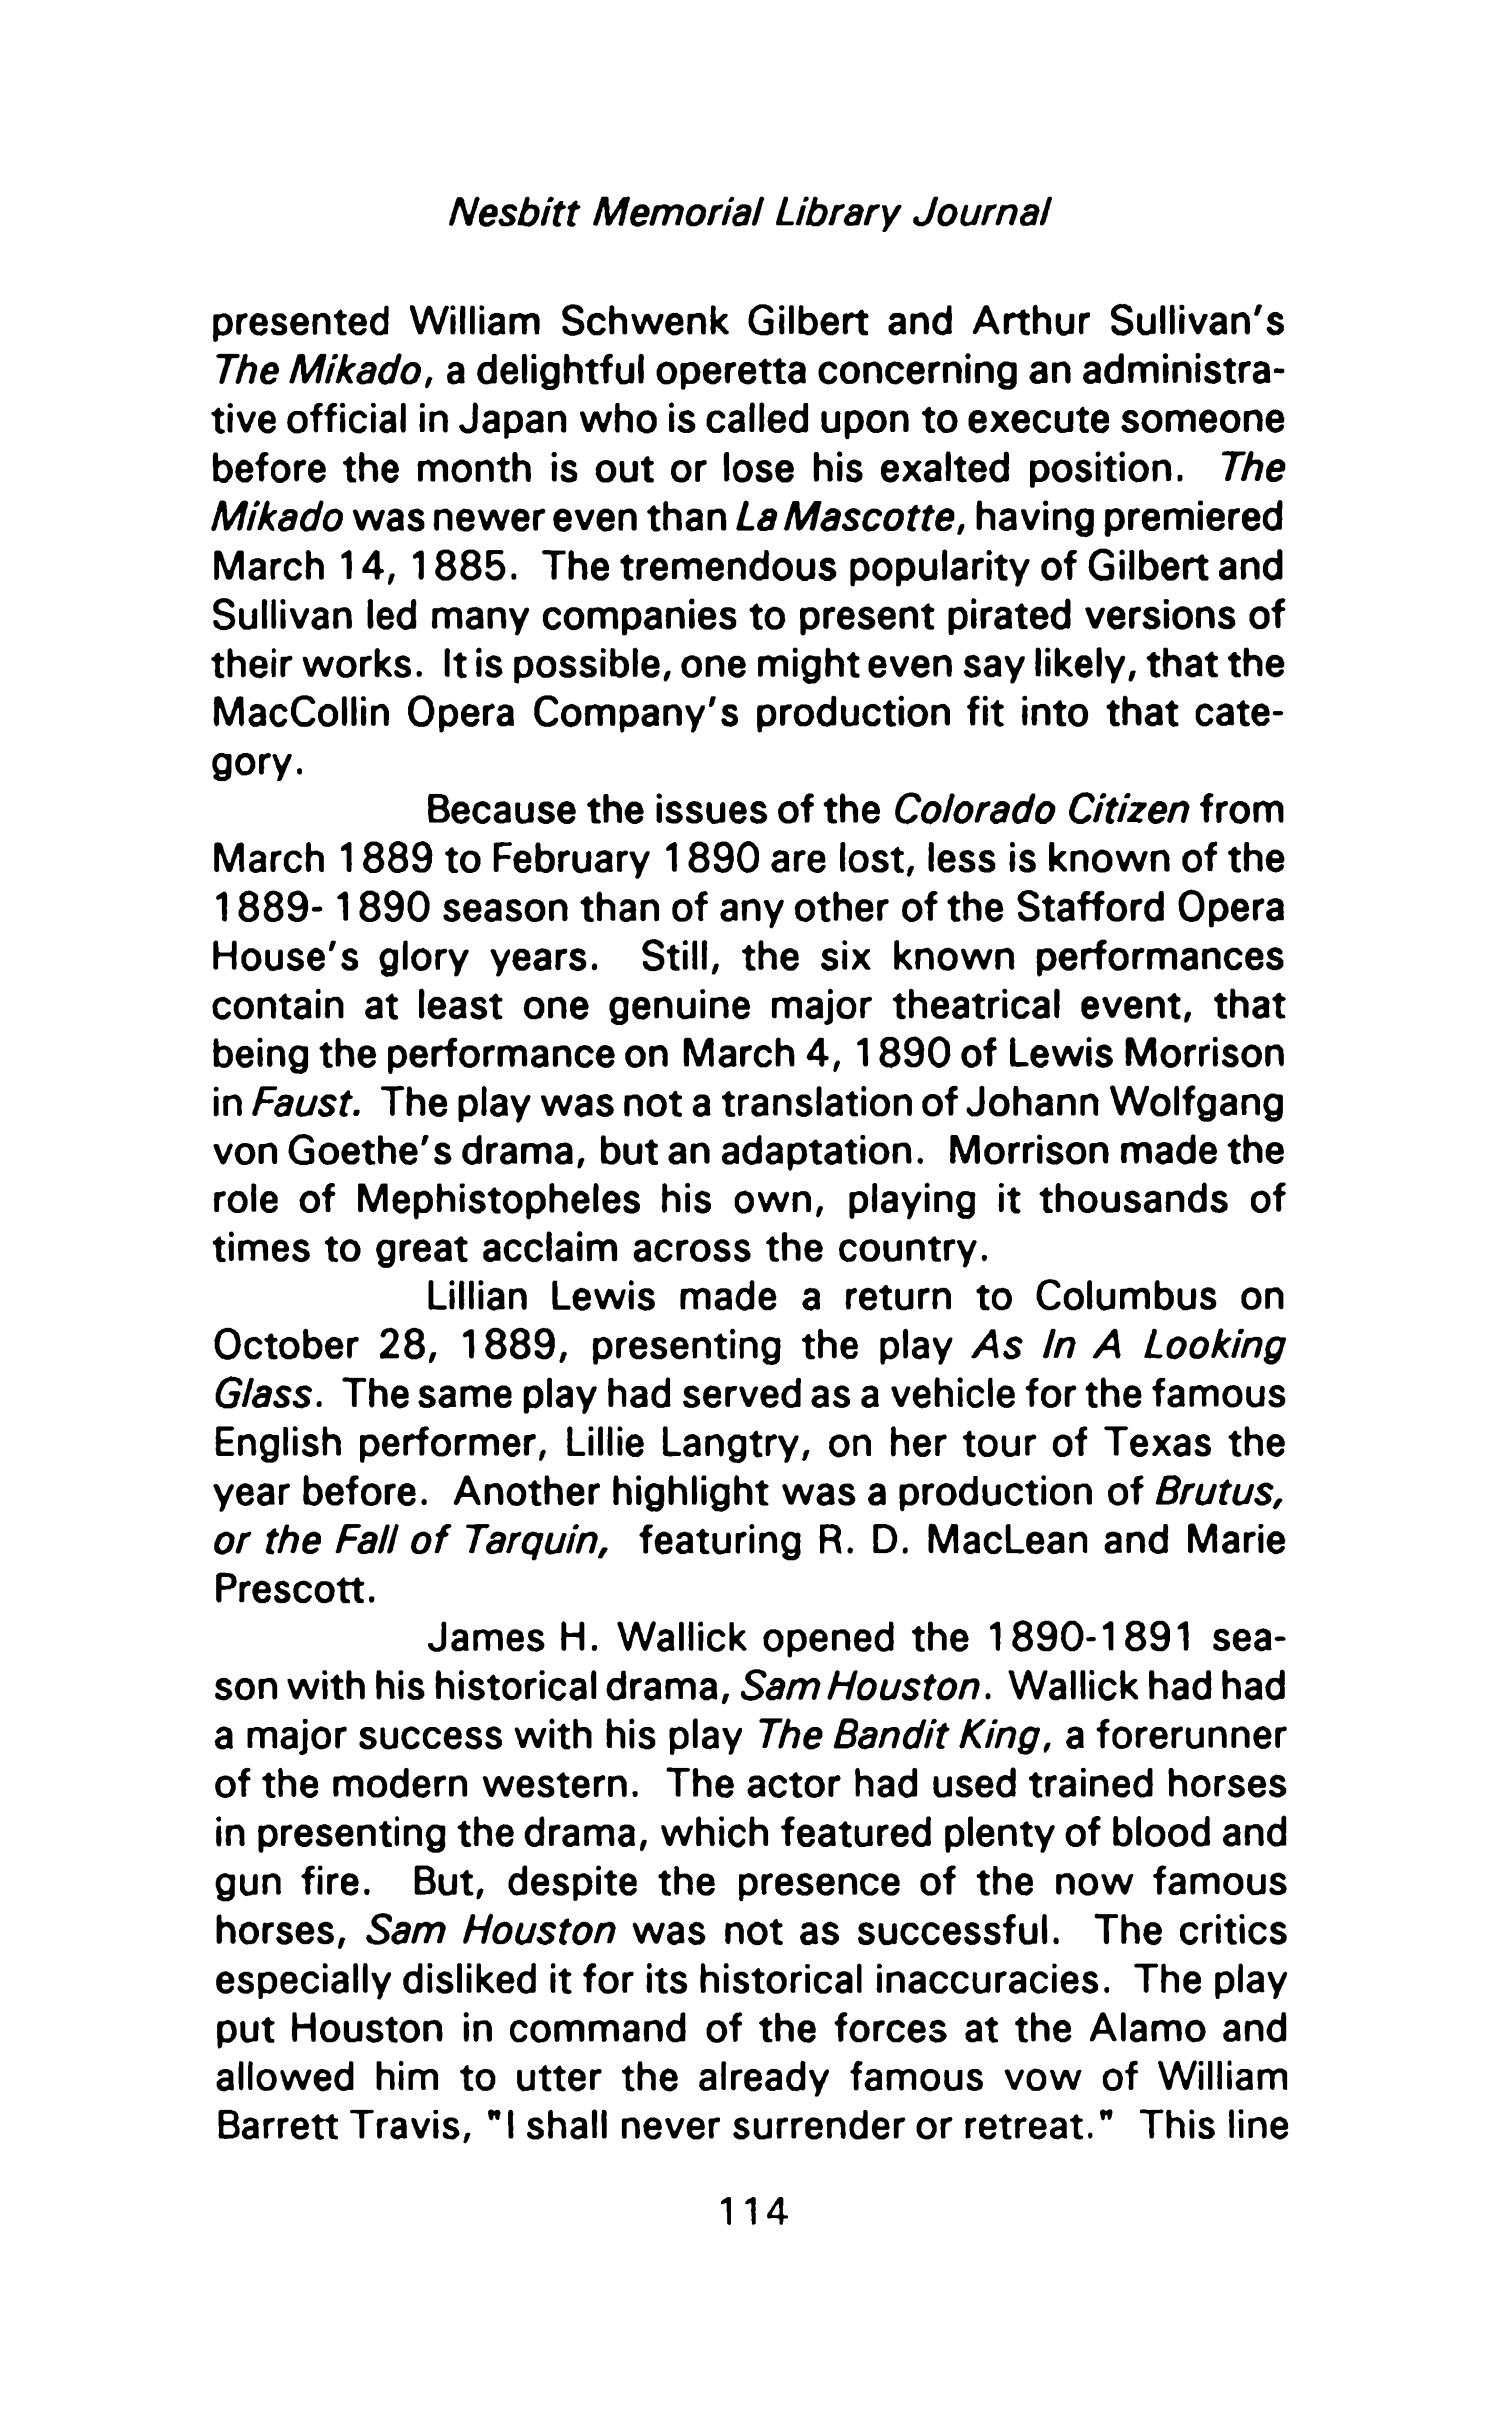 Nesbitt Memorial Library Journal, Volume 1, Number 4, March 1990
                                                
                                                    114
                                                